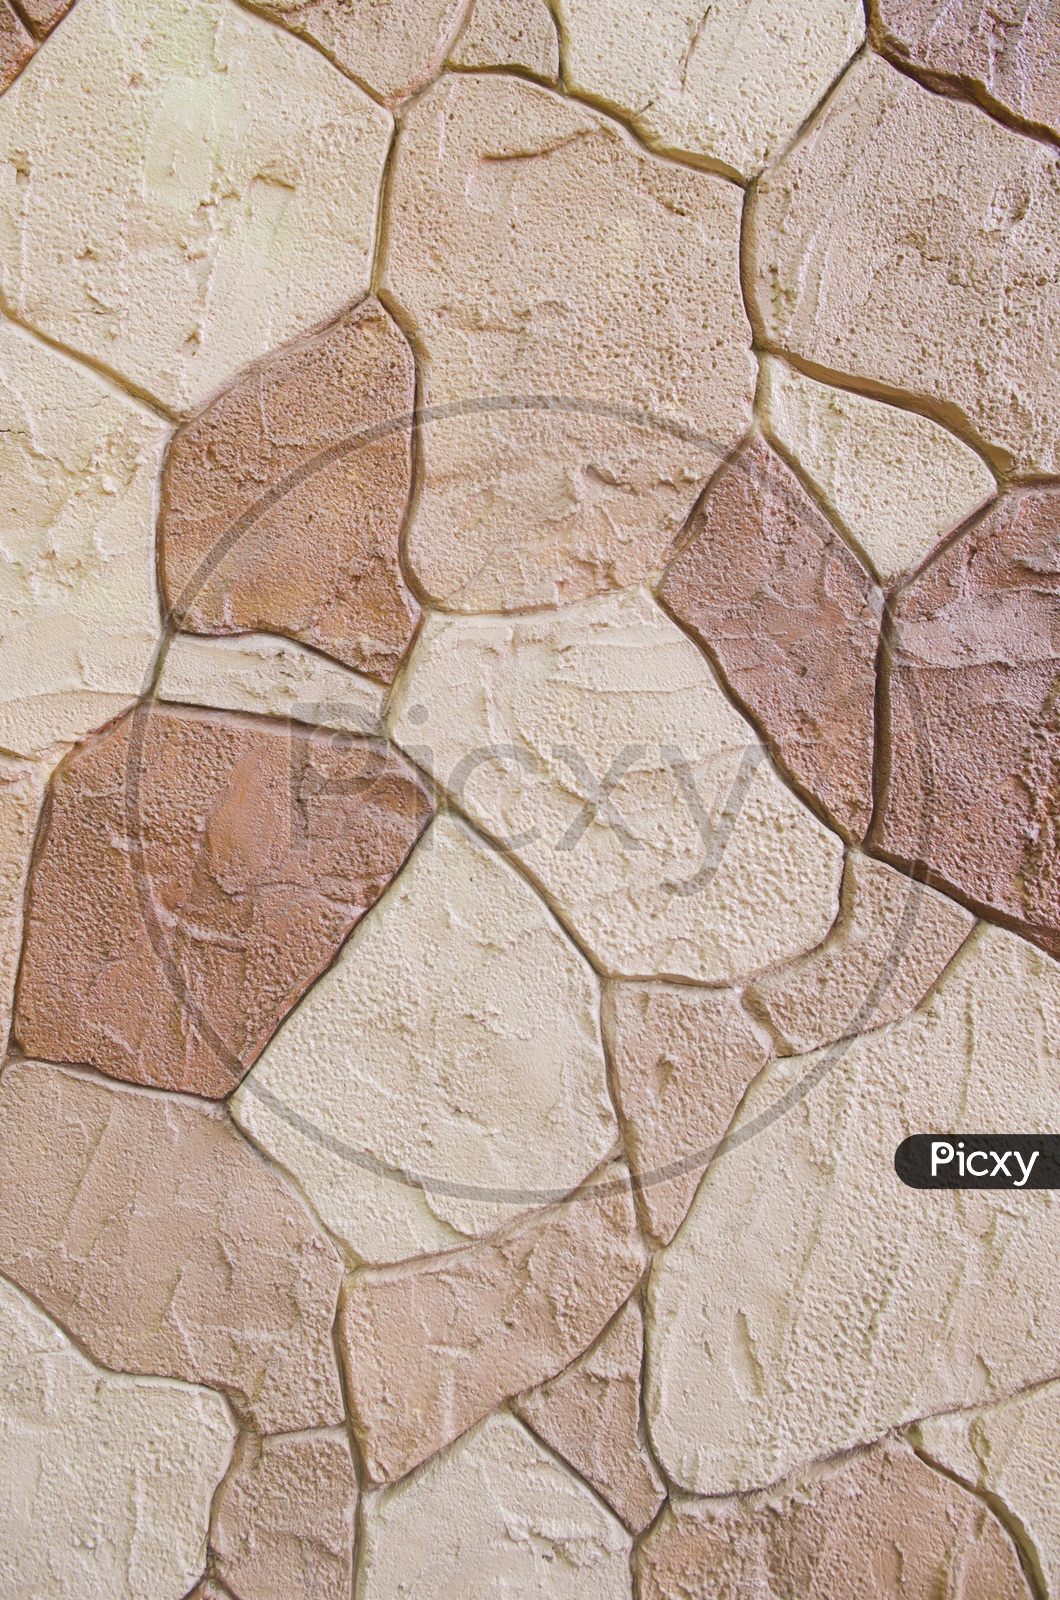 Patterns On Stone Wall Closeup